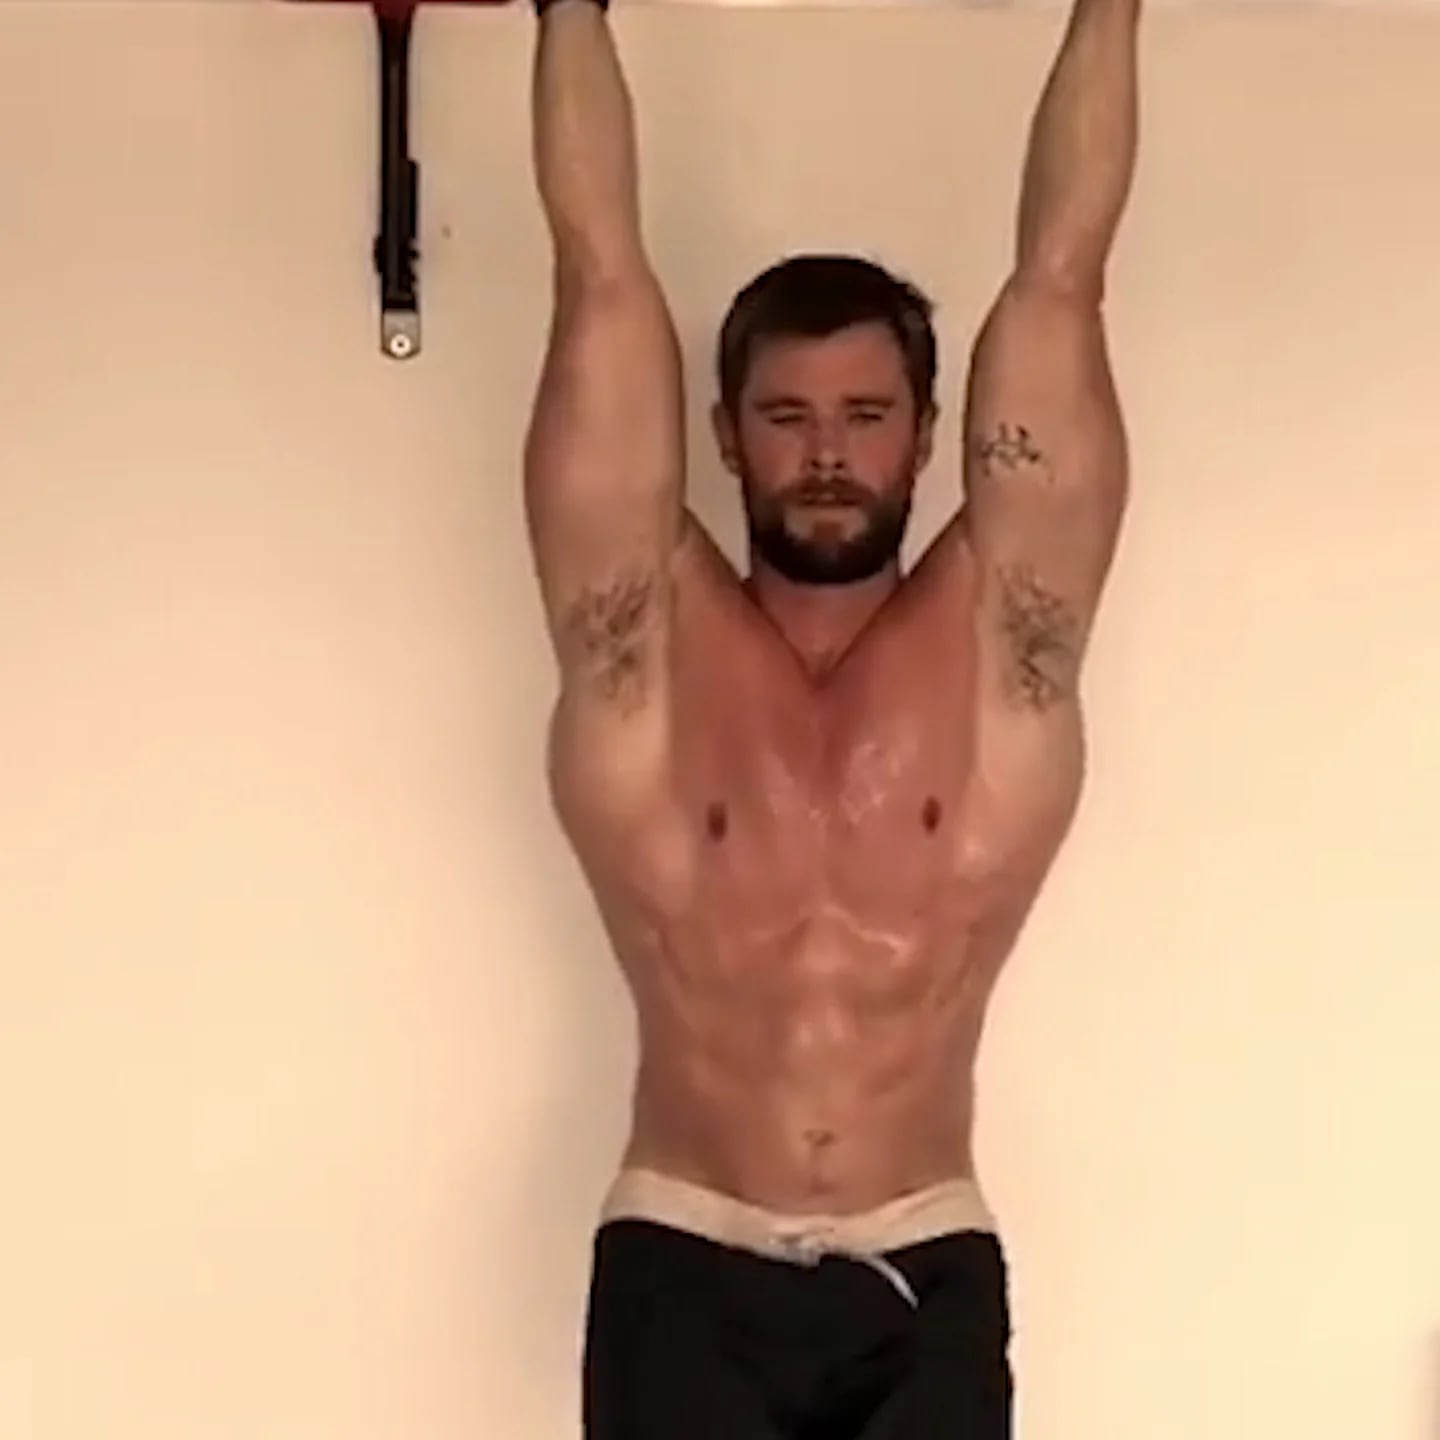 Chris Hemsworth, o Thor de 'Vingadores', tem dieta para músculos